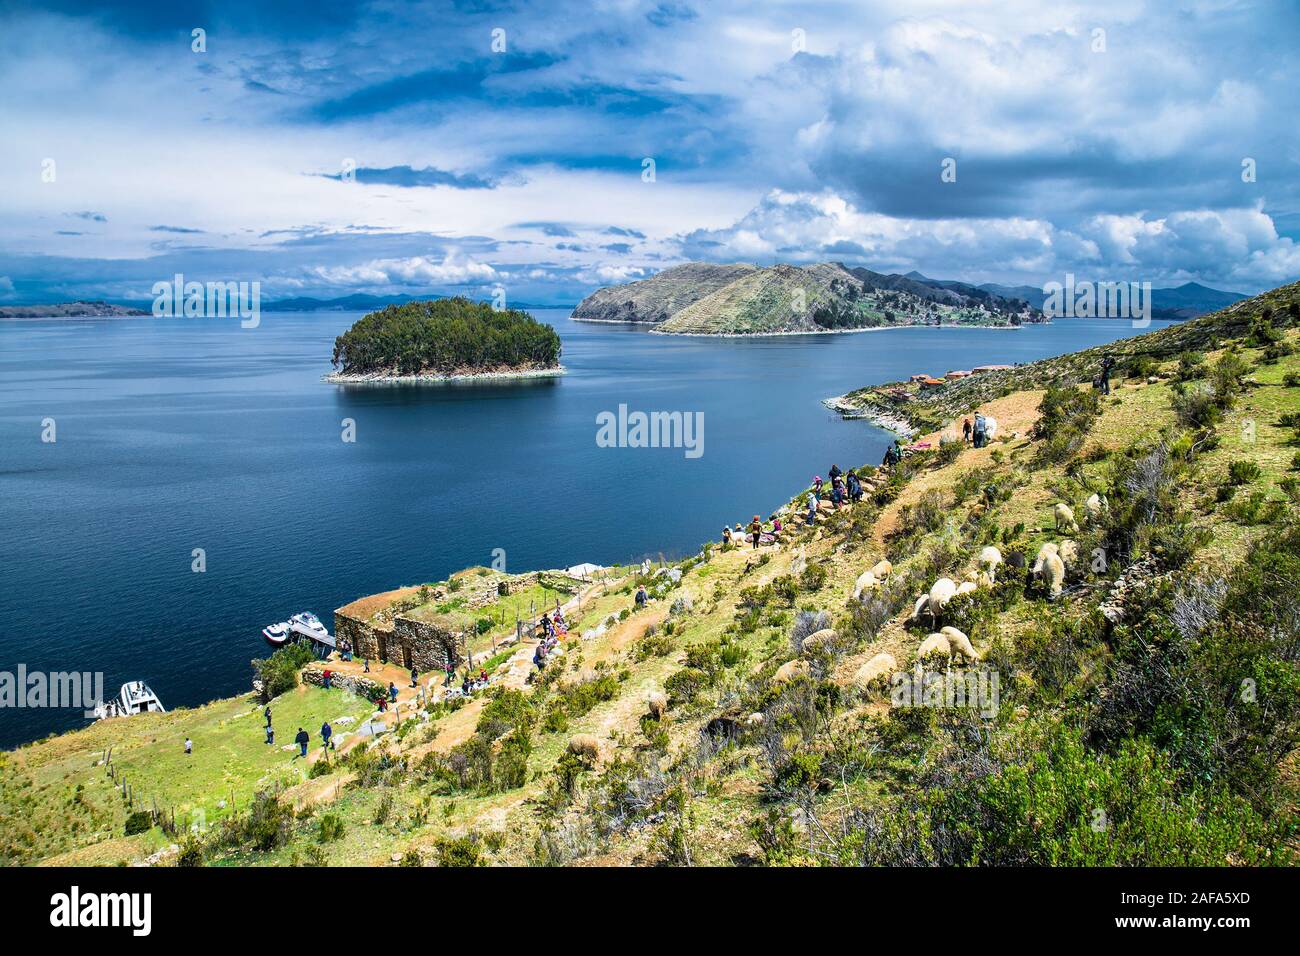 Taquile , Perù - Jan 5, 2019: vista panoramica dal villaggio su Taquile isola nel lago Titicaca, Perù. Sud America. Foto Stock